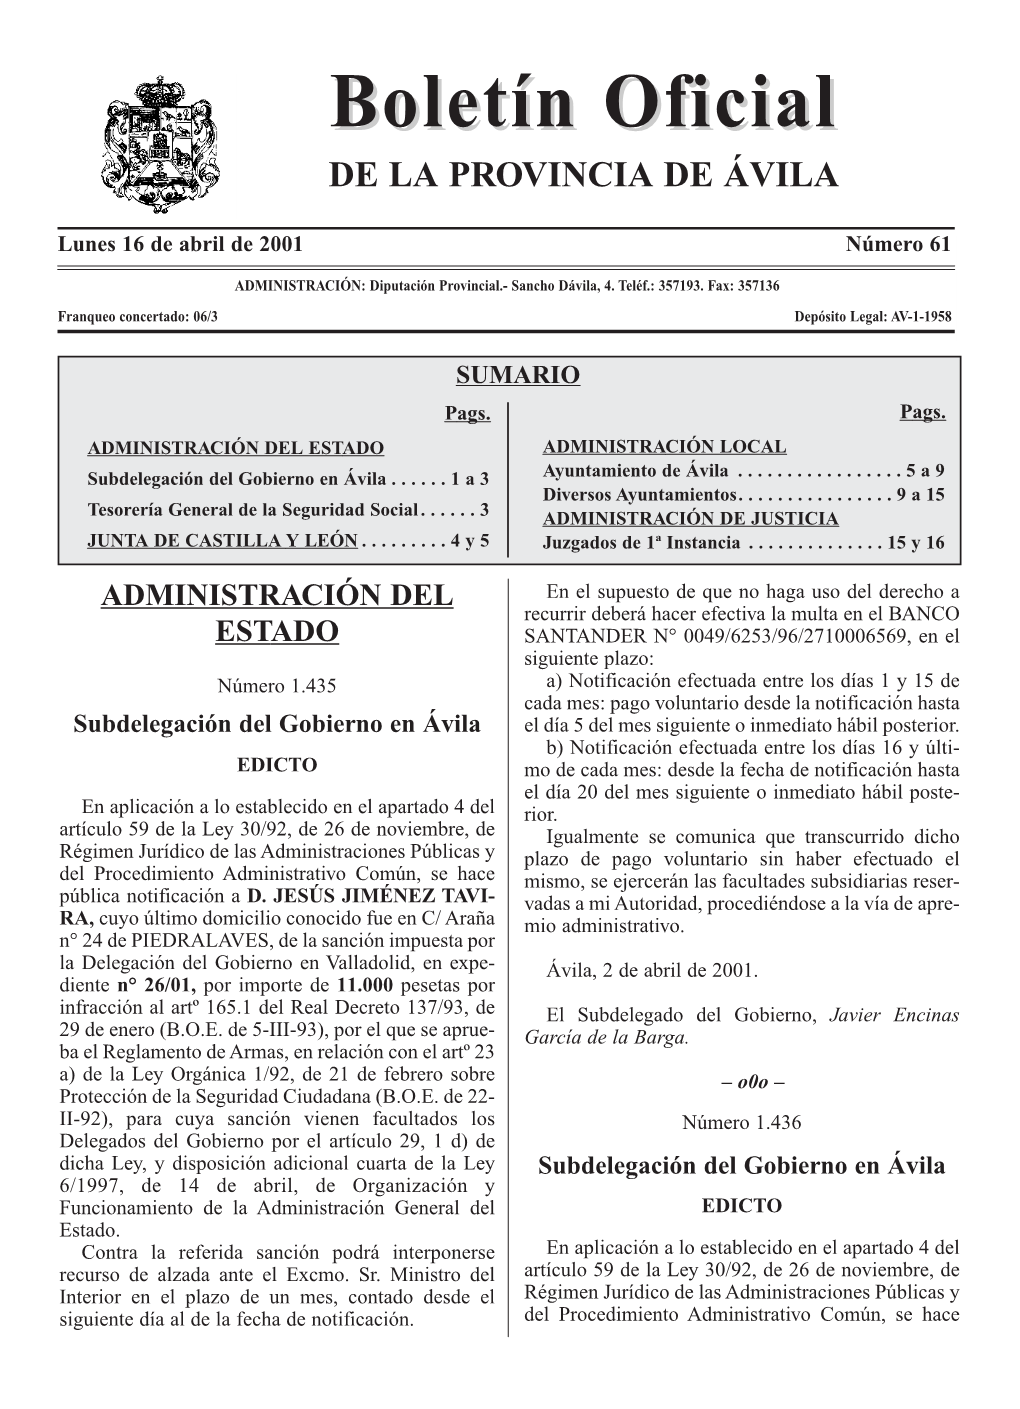 BOLETÍN OFICIAL DE ÁVILA 16 De Abril De 2001 Pública Notificación a Dª BEATRIZ FERRY Pública Notificación a D